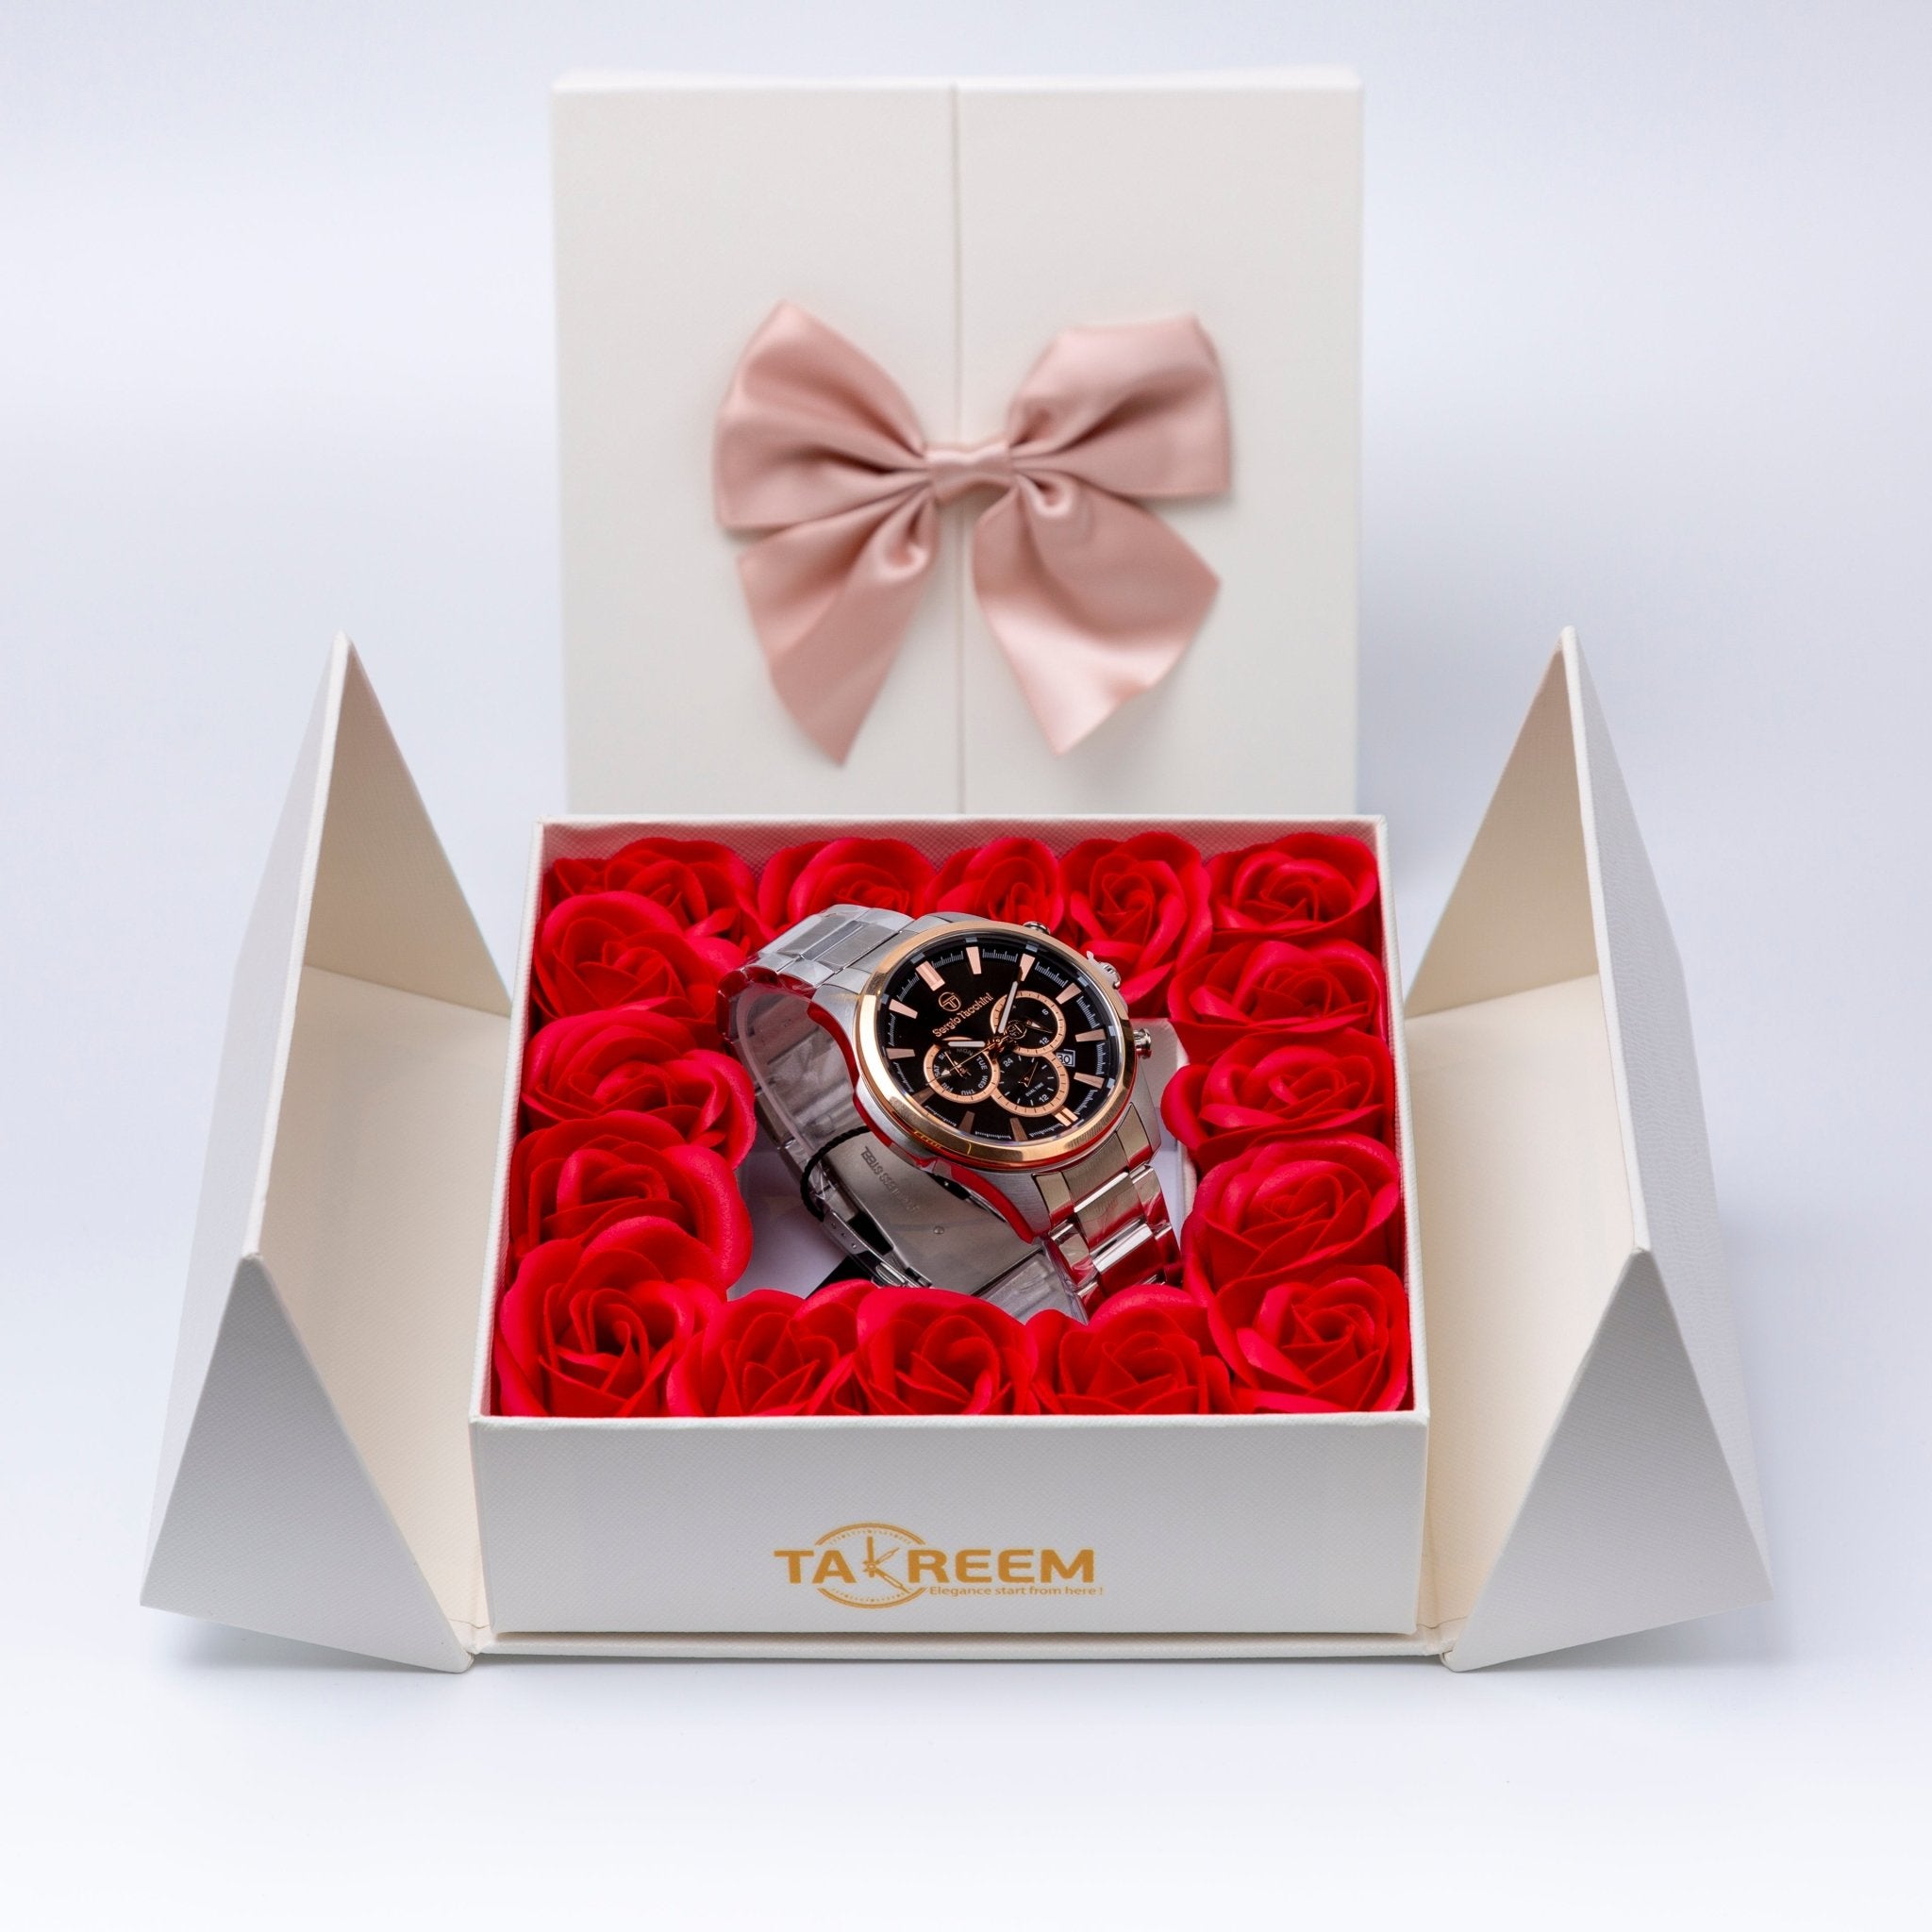 Flower Box - Gift For Men 19 - #shoFlower Box - Gift For Men 19p_name#Flower Box - Gift For Men 19Gift Boxes & TinsTakreemTakreem.joMenWatchFlower Box - Gift For Men 19 - Takreem.jo